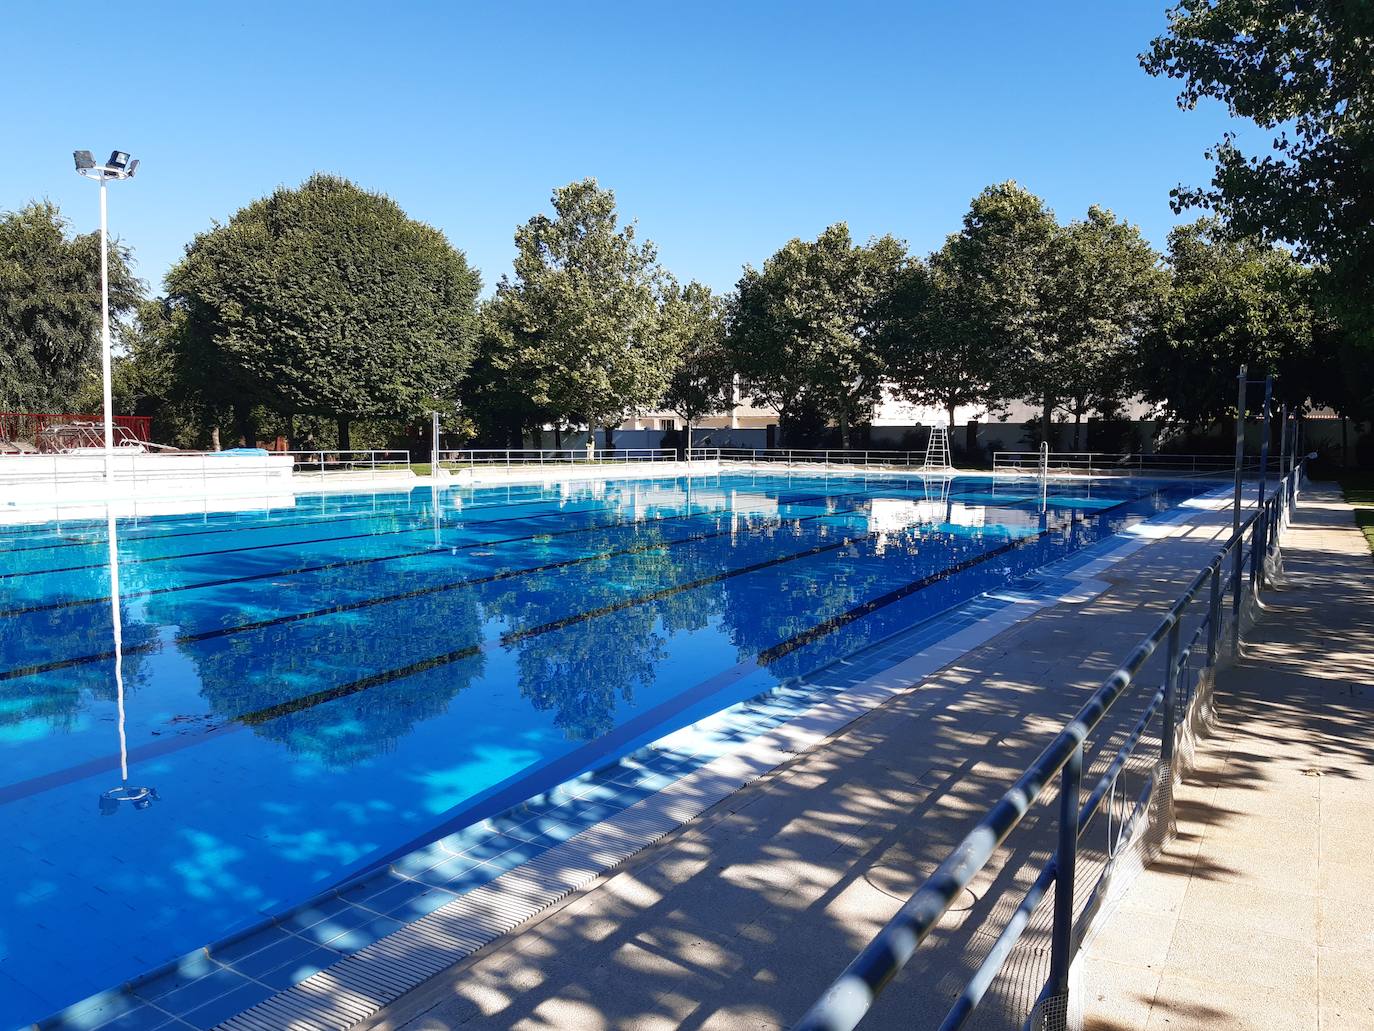 El Ayuntamiento quiere abrir la piscina municipal el 15 de junio